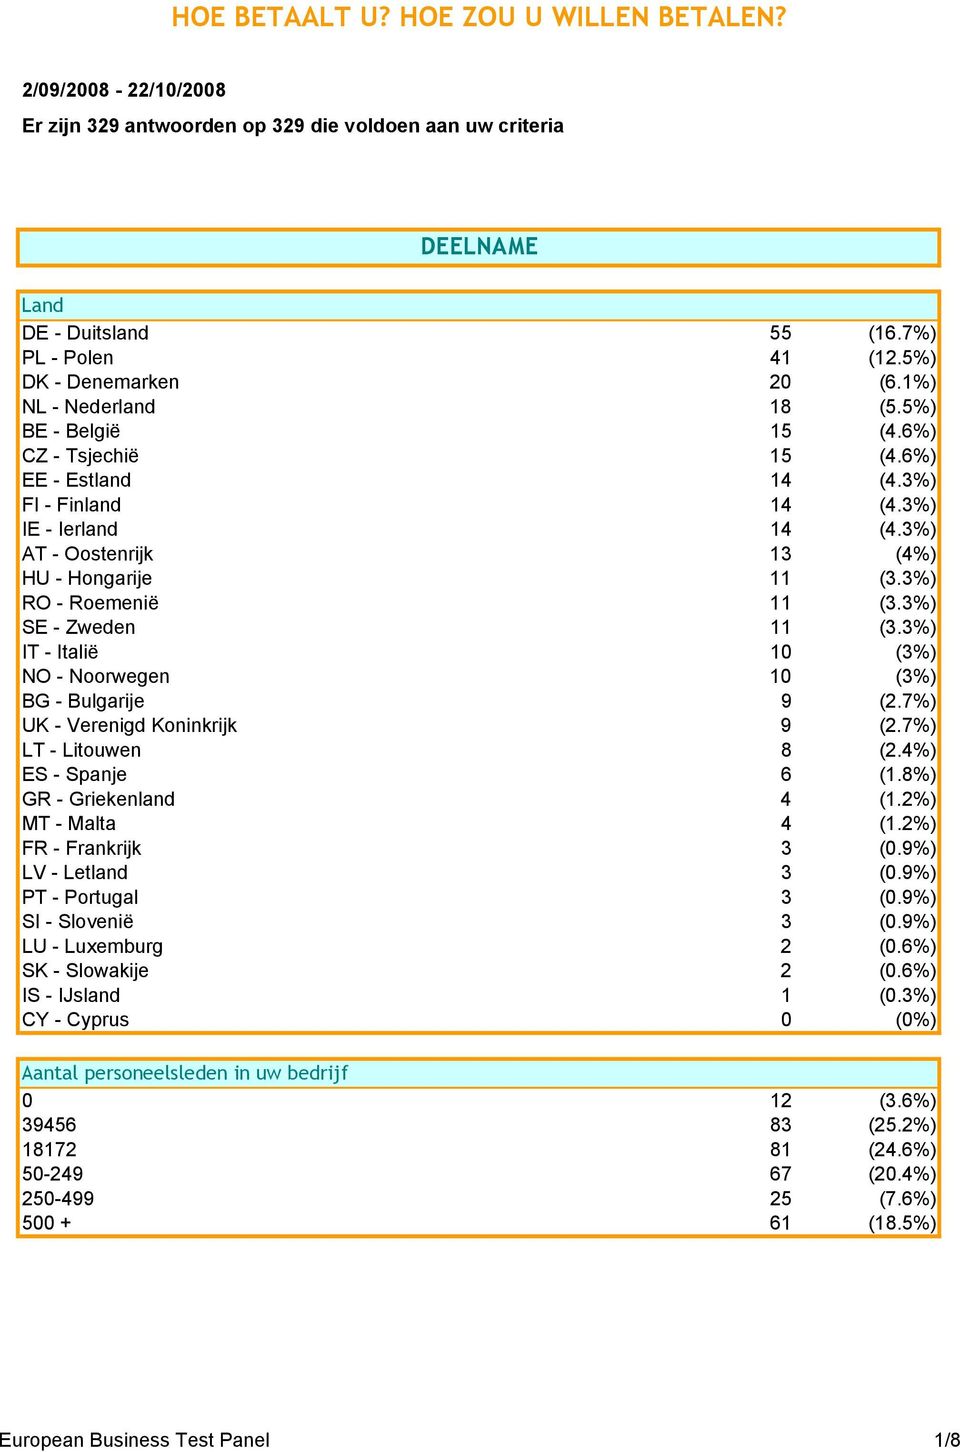 3%) AT - Oostenrijk 13 (4%) HU - Hongarije 11 (3.3%) RO - Roemenië 11 (3.3%) SE - Zweden 11 (3.3%) IT - Italië 10 (3%) NO - Noorwegen 10 (3%) BG - Bulgarije 9 (2.7%) UK - Verenigd Koninkrijk 9 (2.